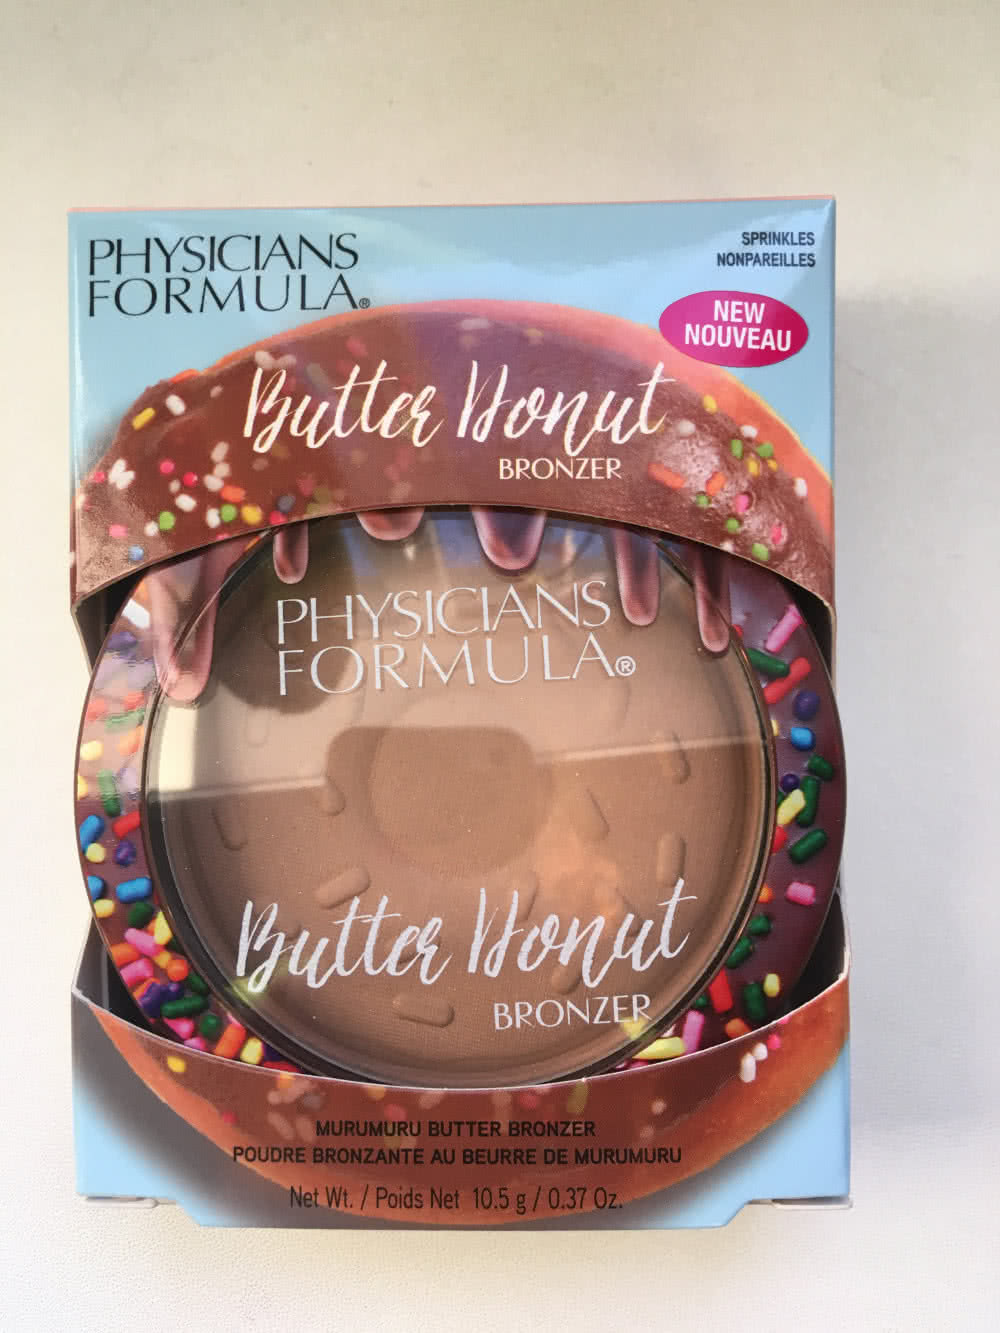 Бронзер от Physicians formula: пончик с посыпкой donut sprinkles